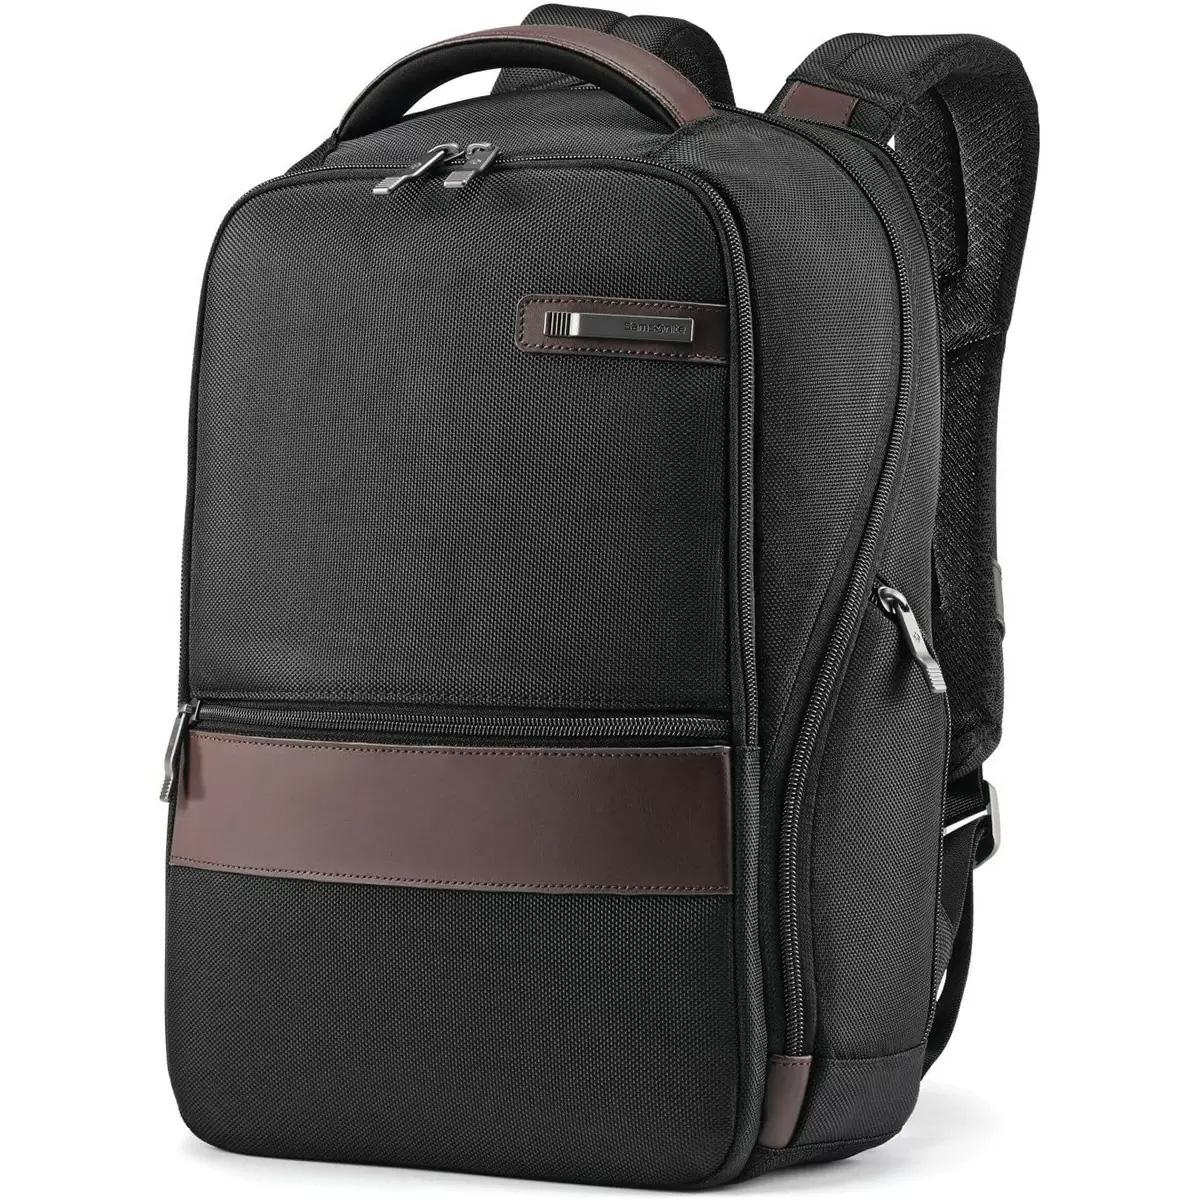 Samsonite Kombi Small Backpack for $34.99